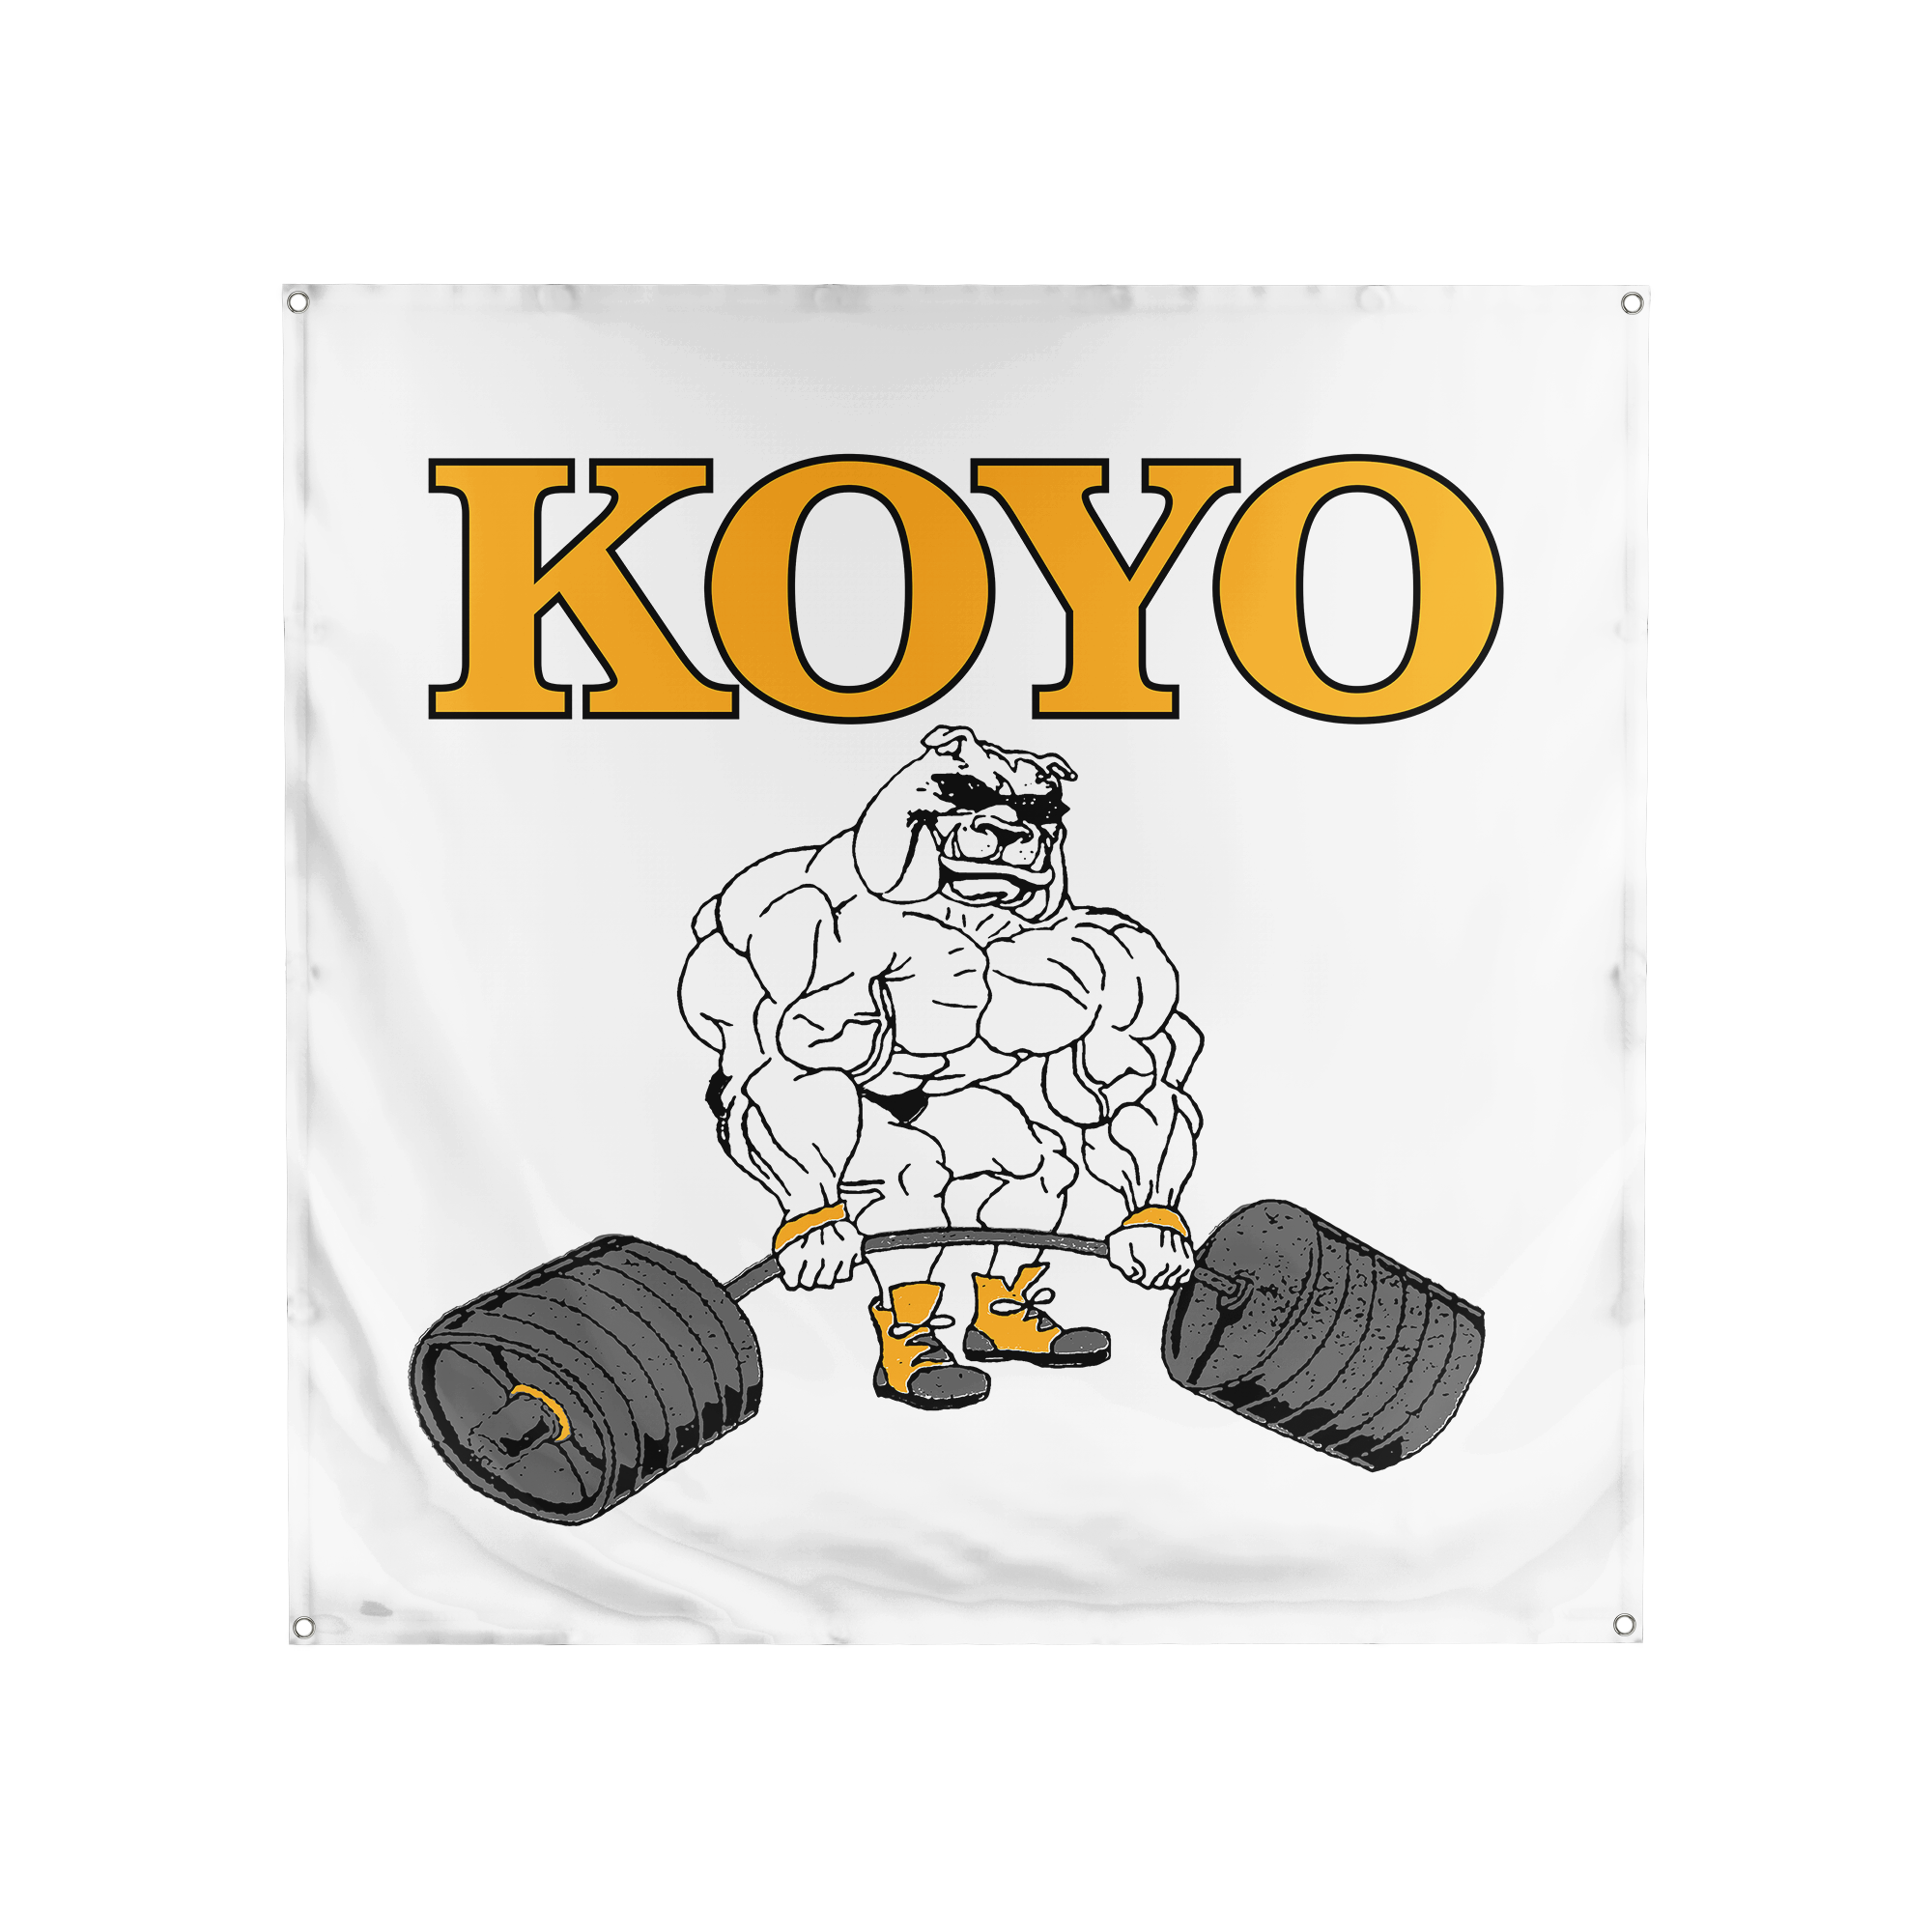 Koyo - Wall Flag